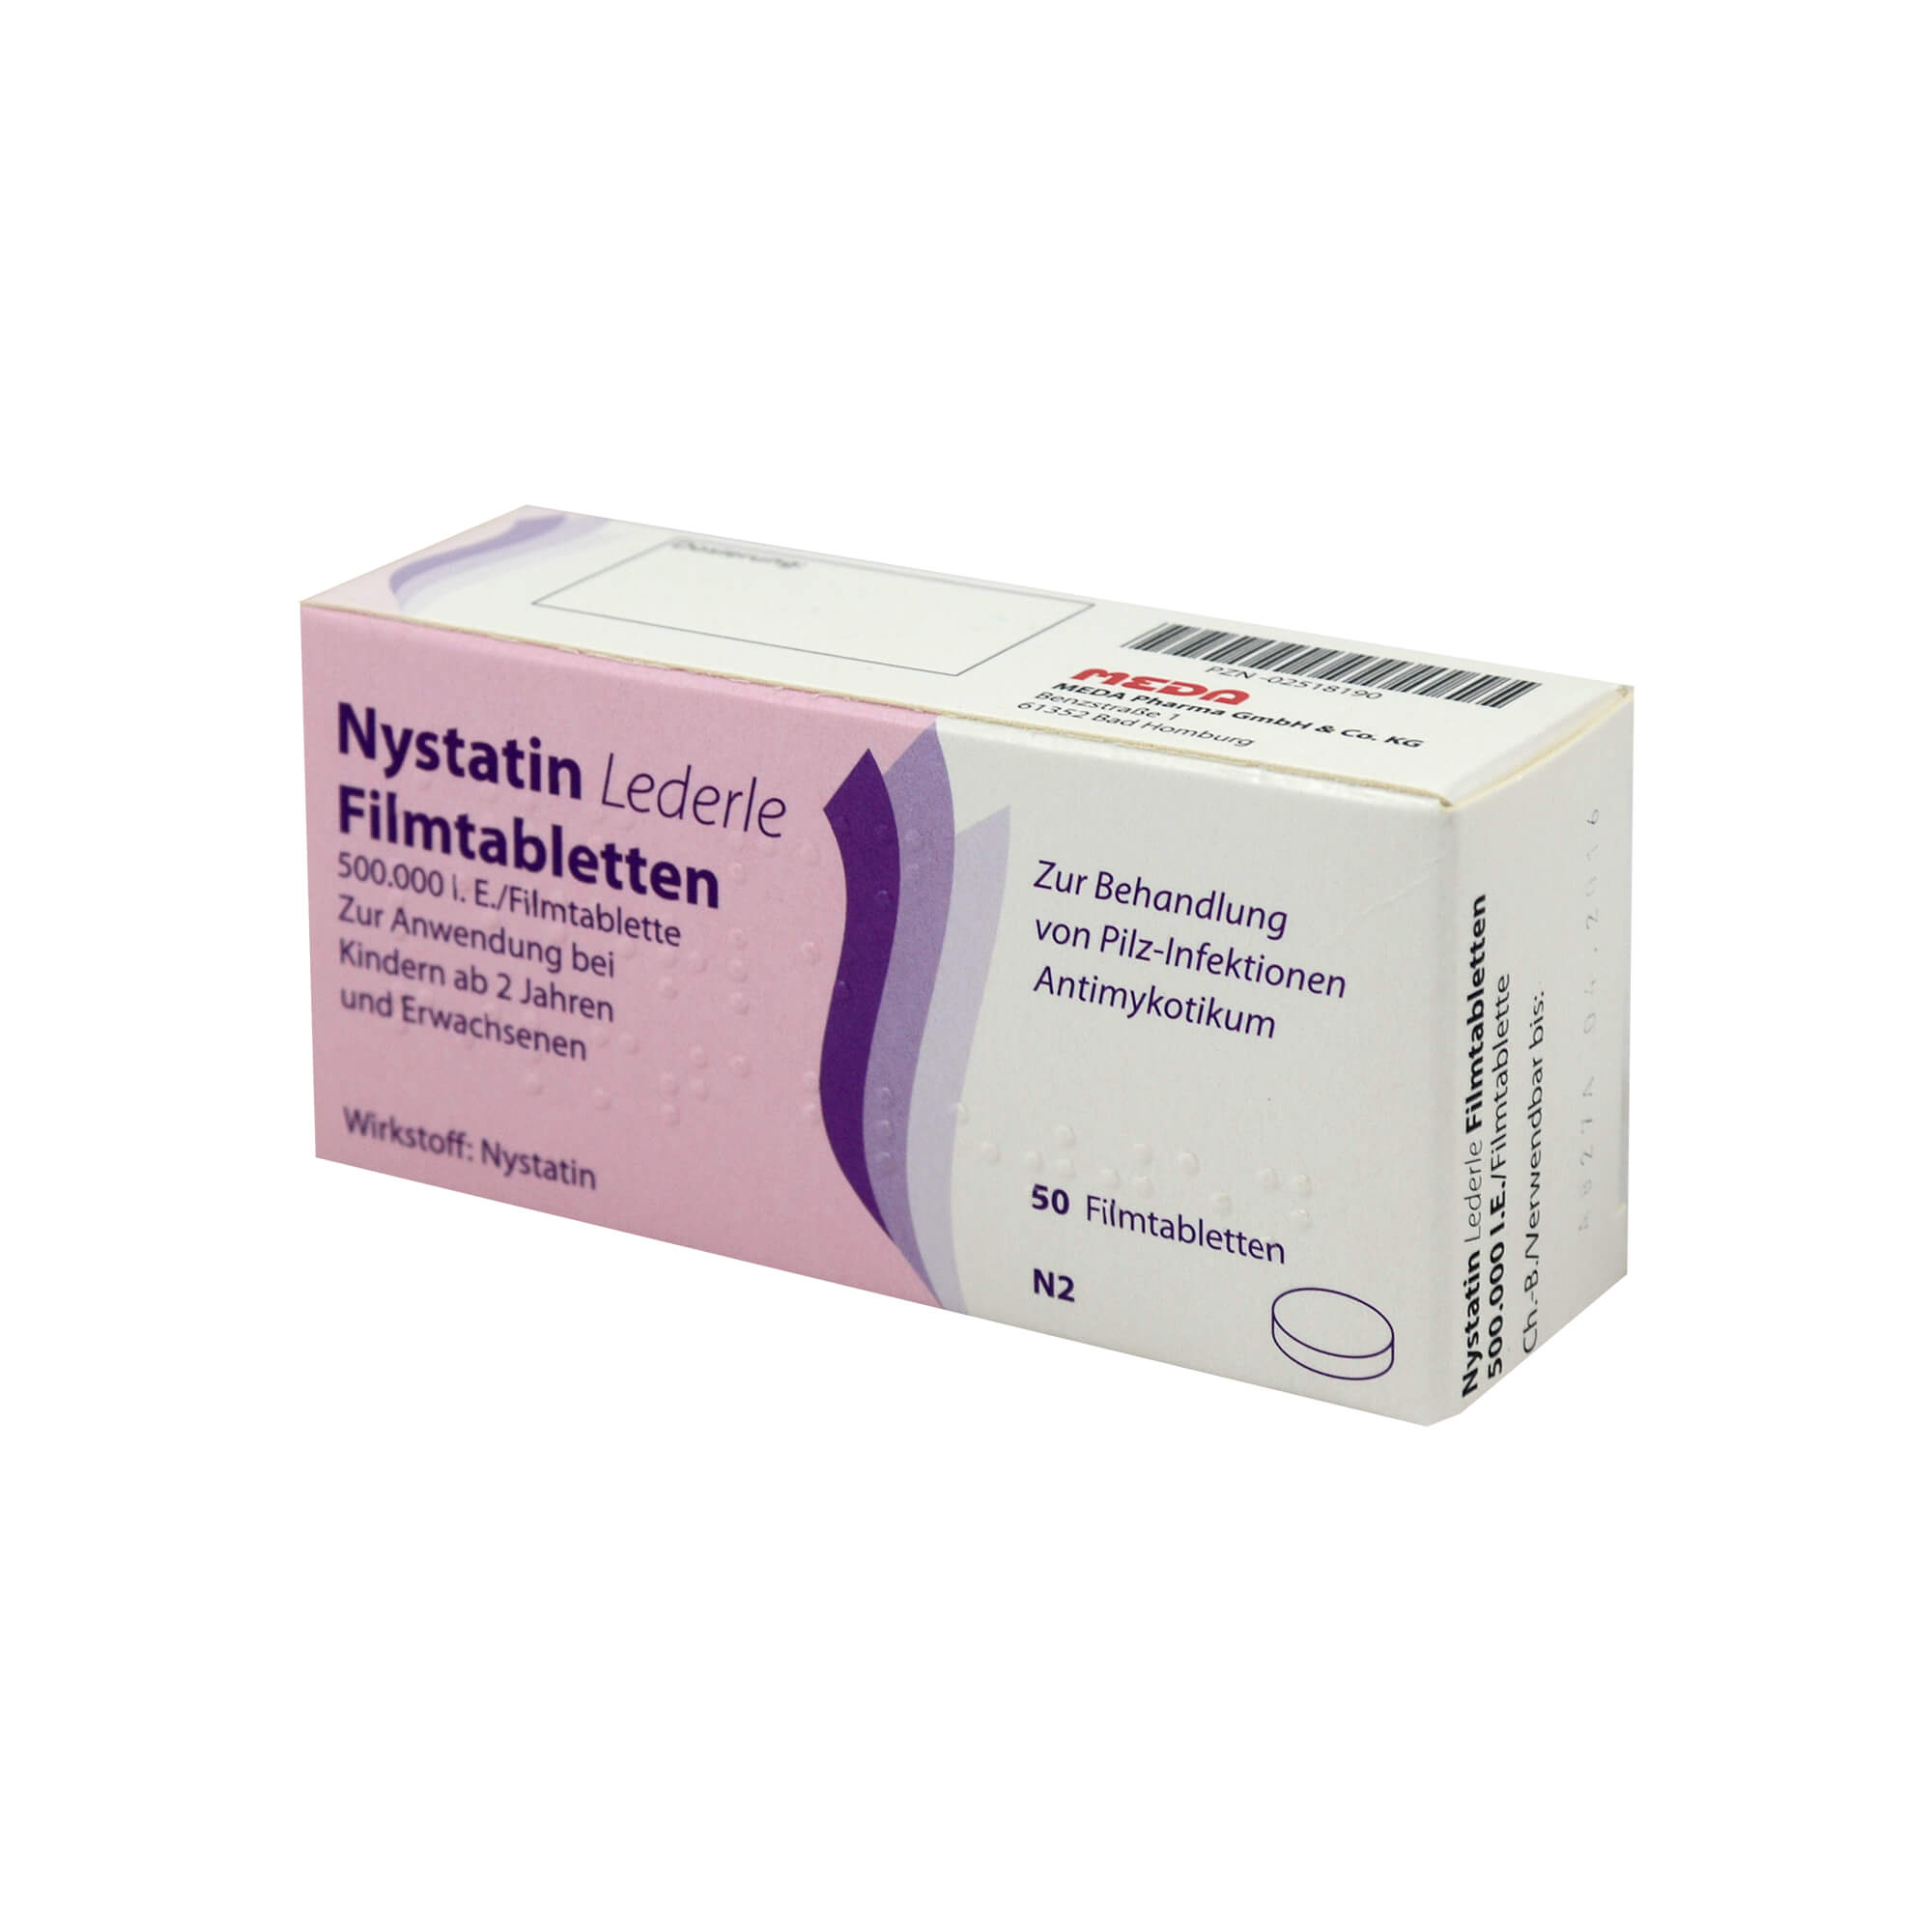 Bei Infektionen im Verdauungstrakt, die durch nachgewiesene Nystatin-empfindliche Hefepilze hervorgerufen worden sind.